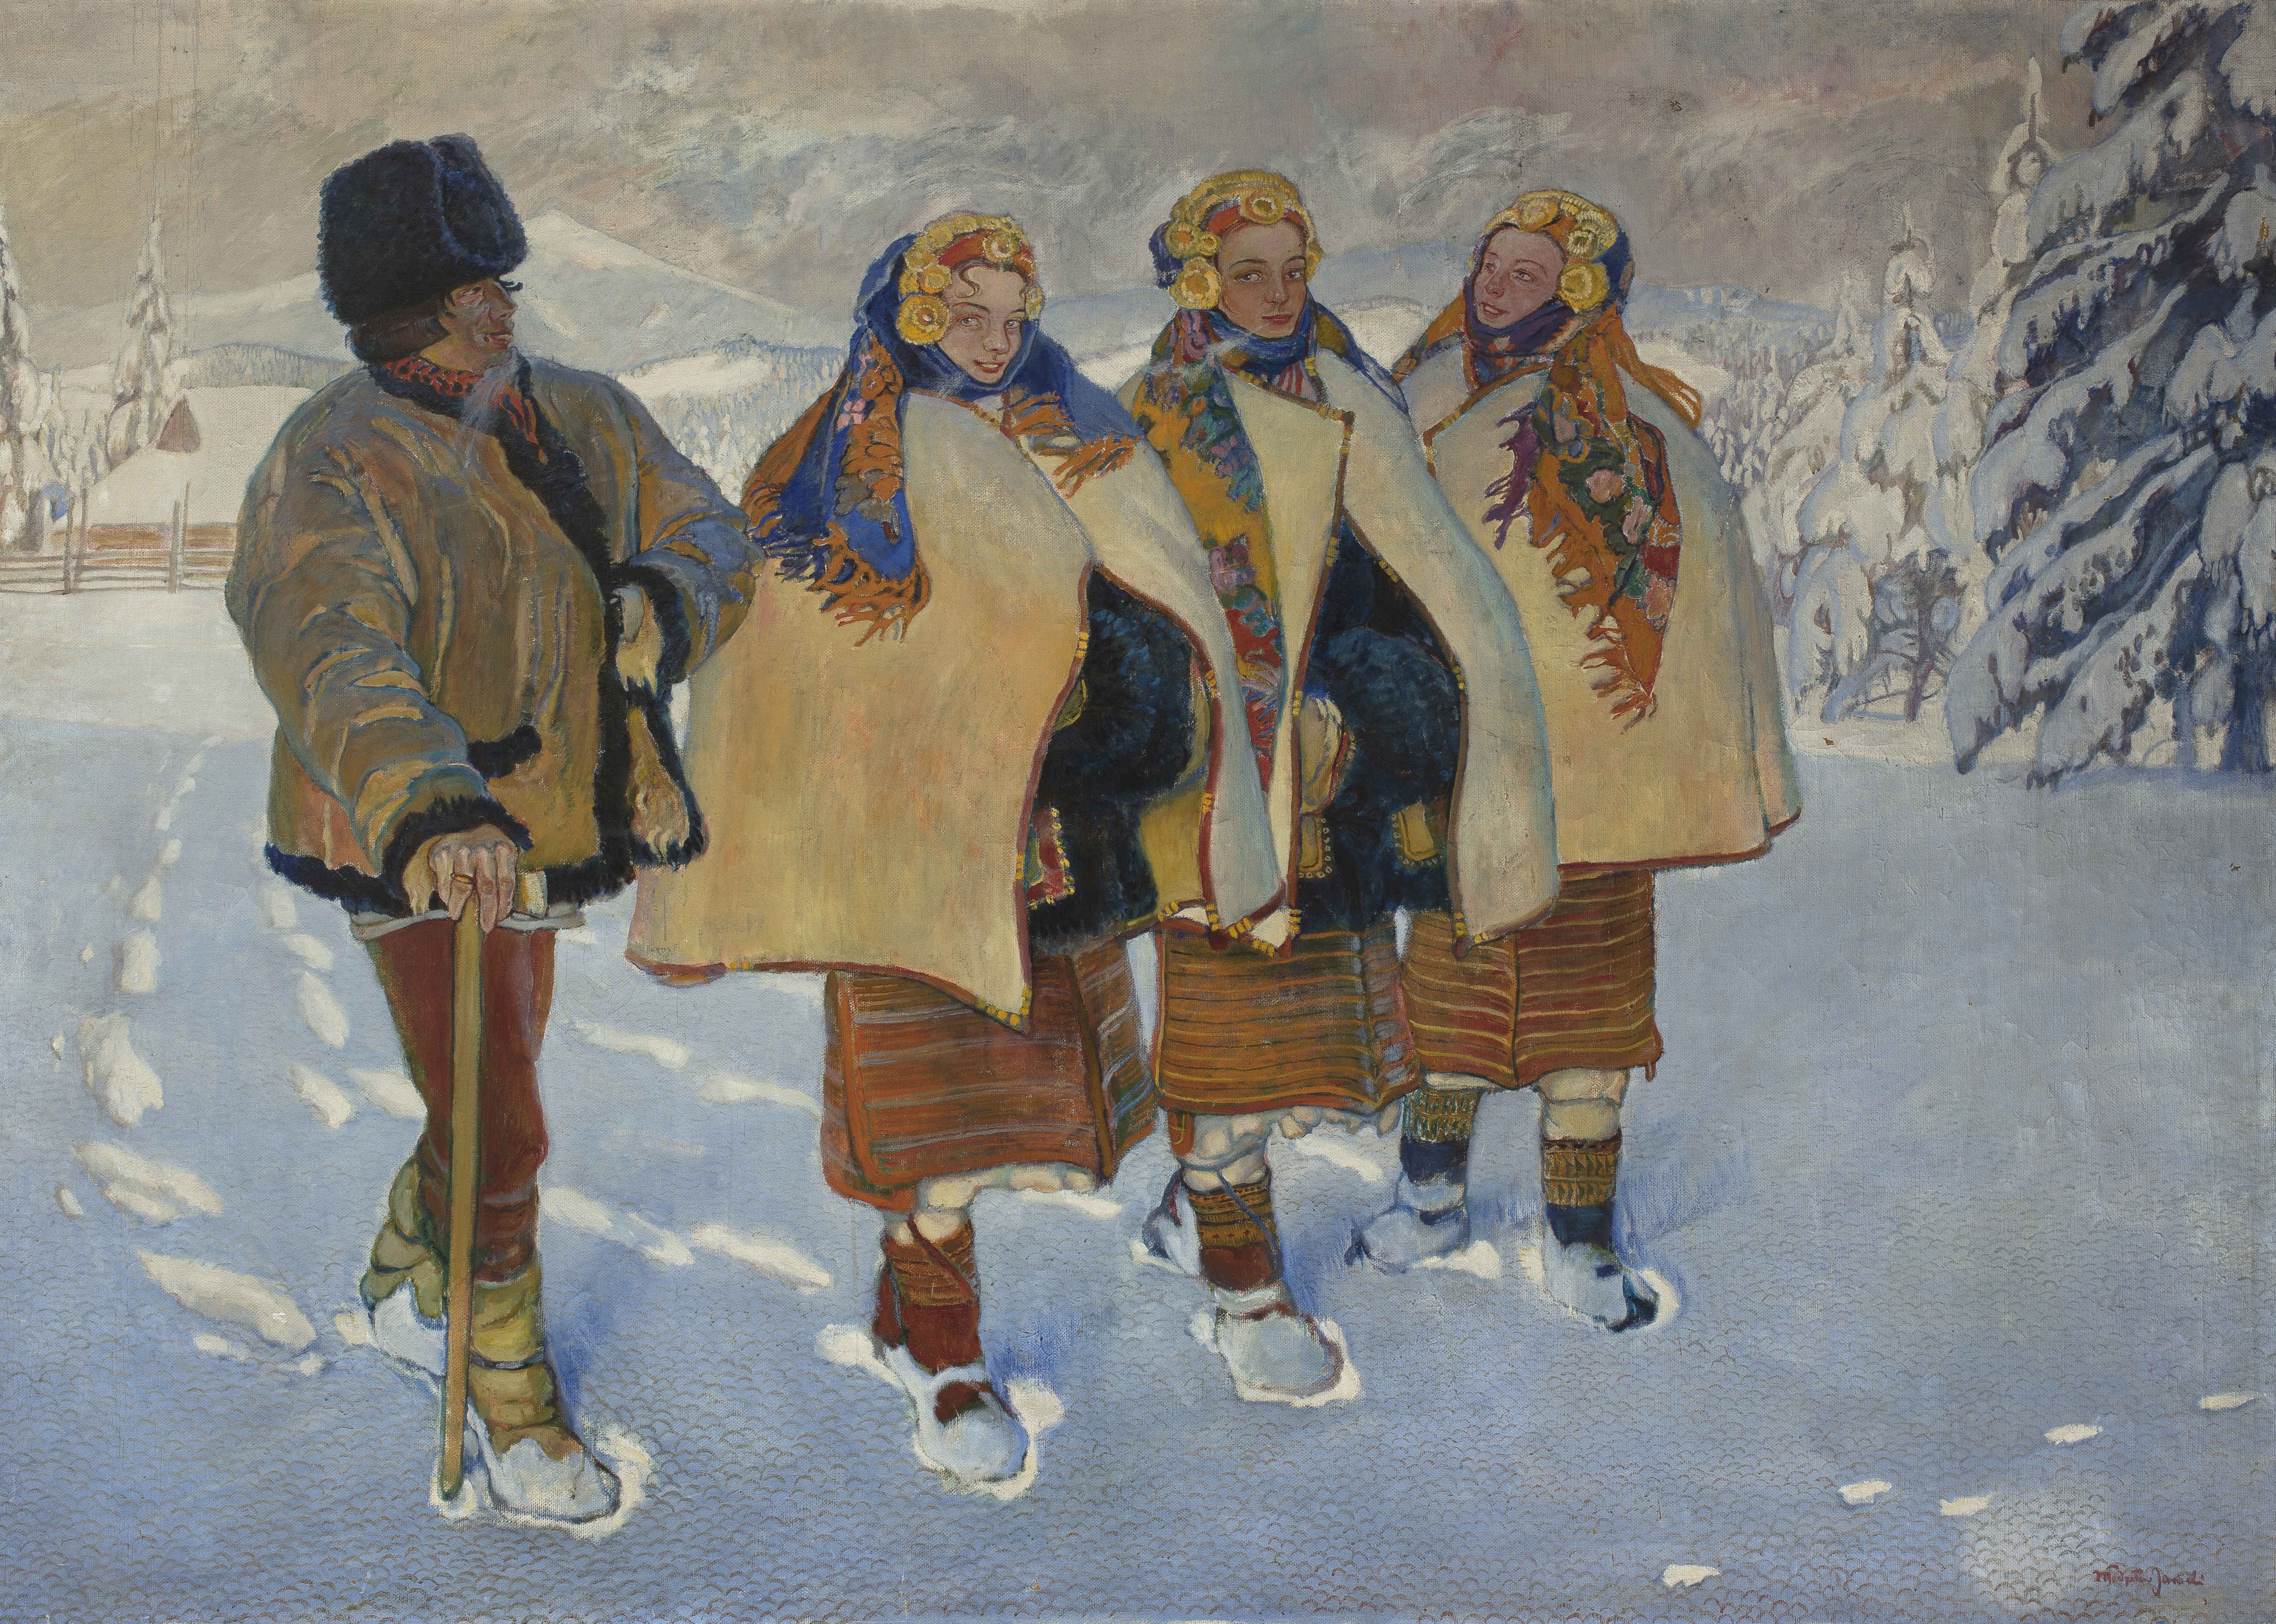 MNW; Jarocki, Władysław (1879-1965) (malarz); Huculi w Karpatach; 1910; olej; płótno; 201 x 282